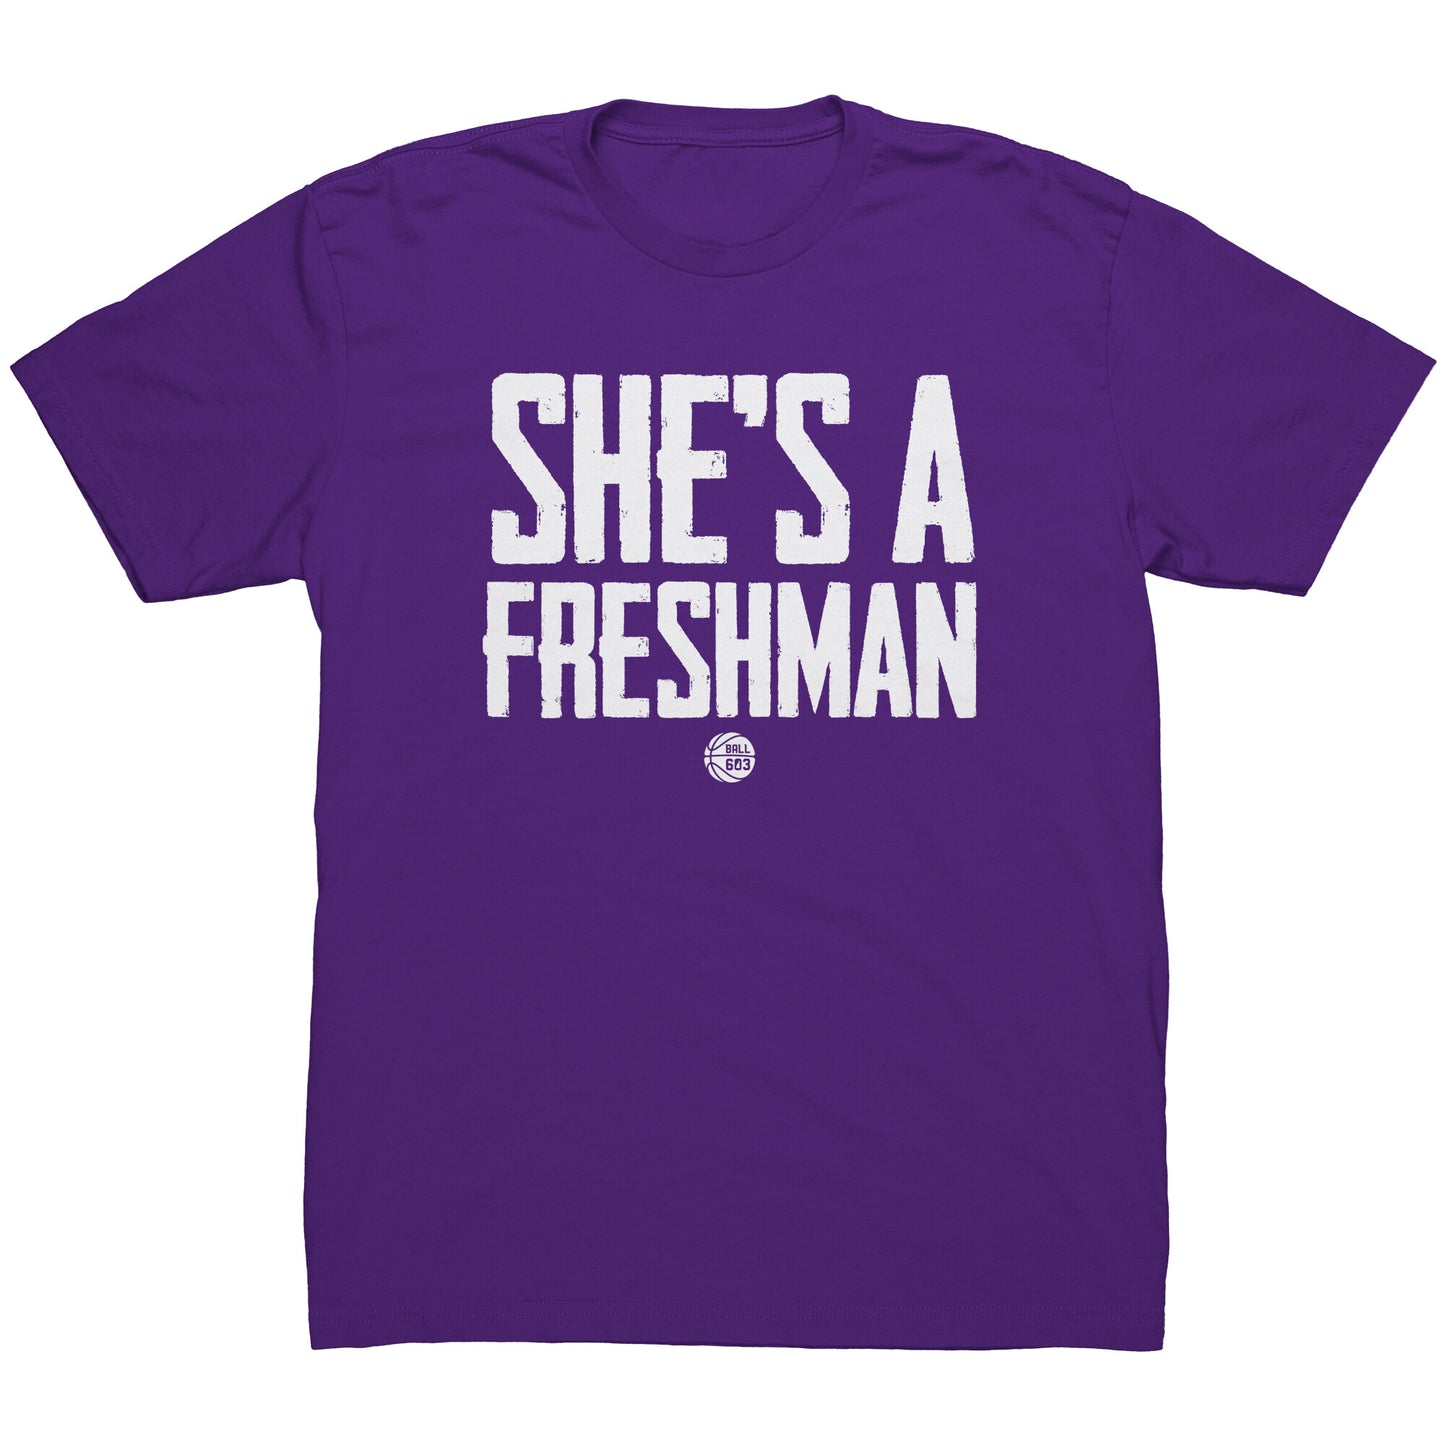 She's a Freshman T-Shirt (Men's Cut)